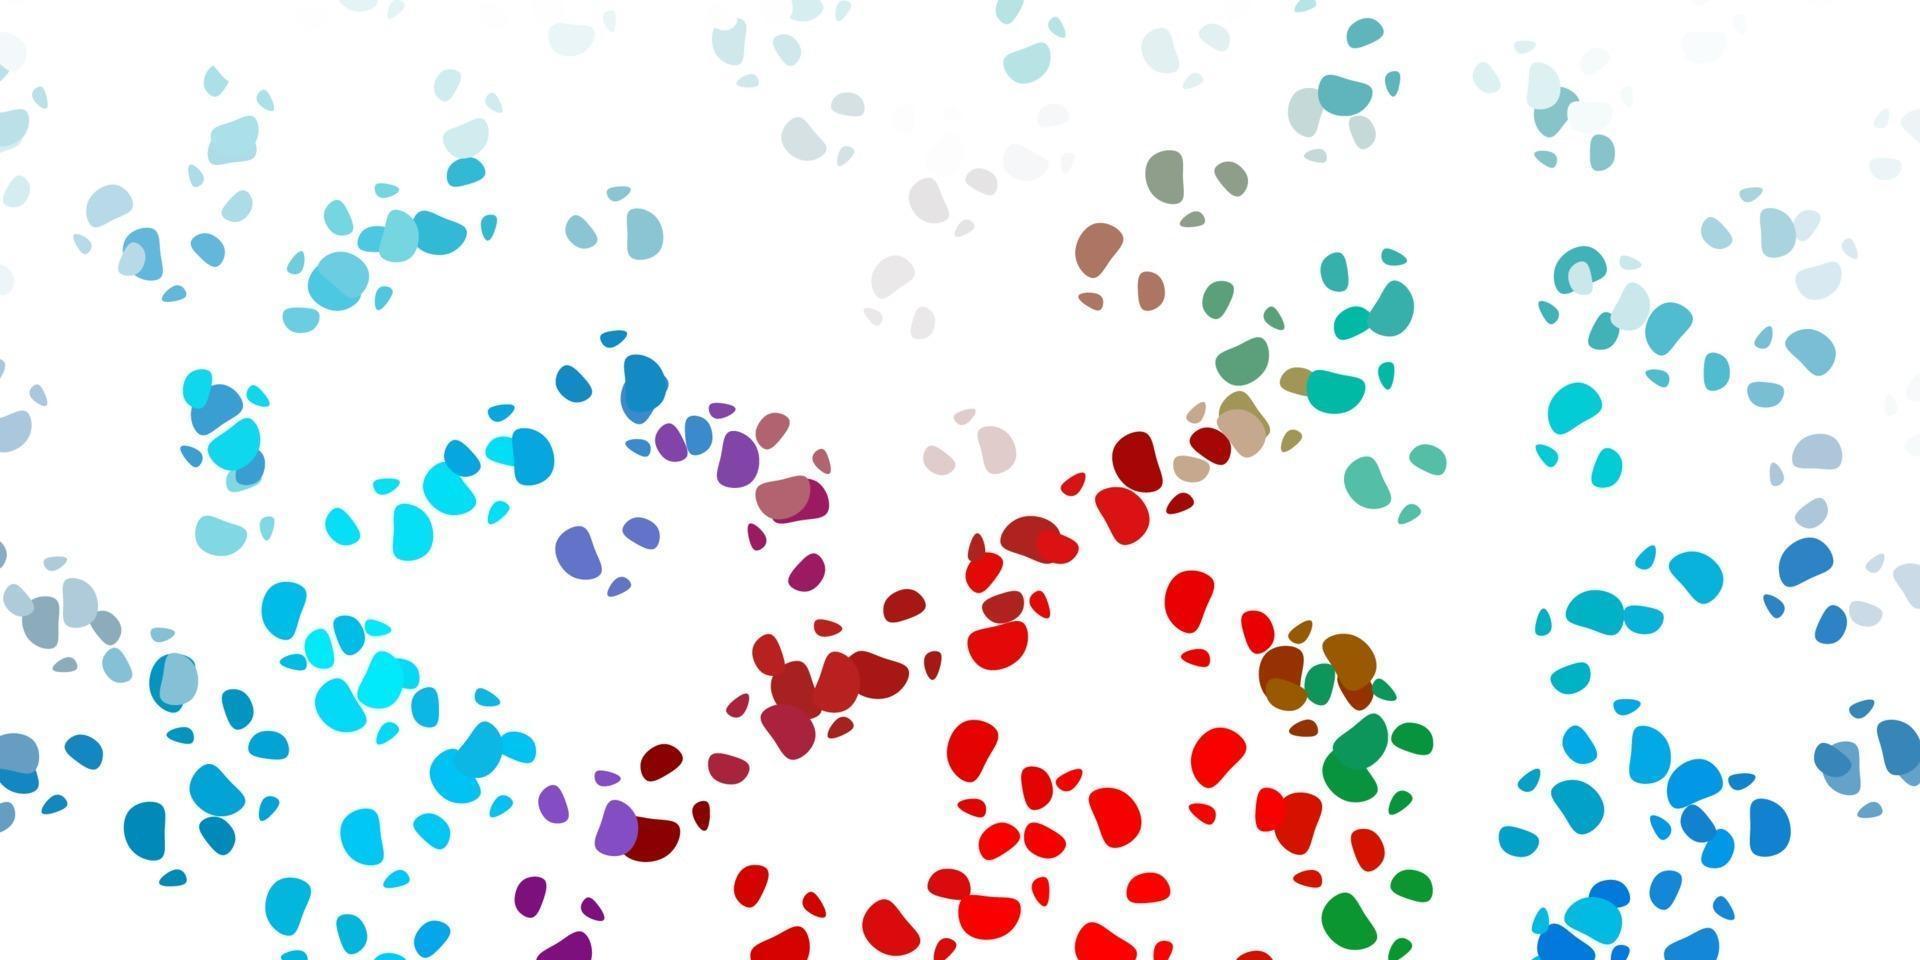 pano de fundo vector azul e vermelho claro com formas caóticas.